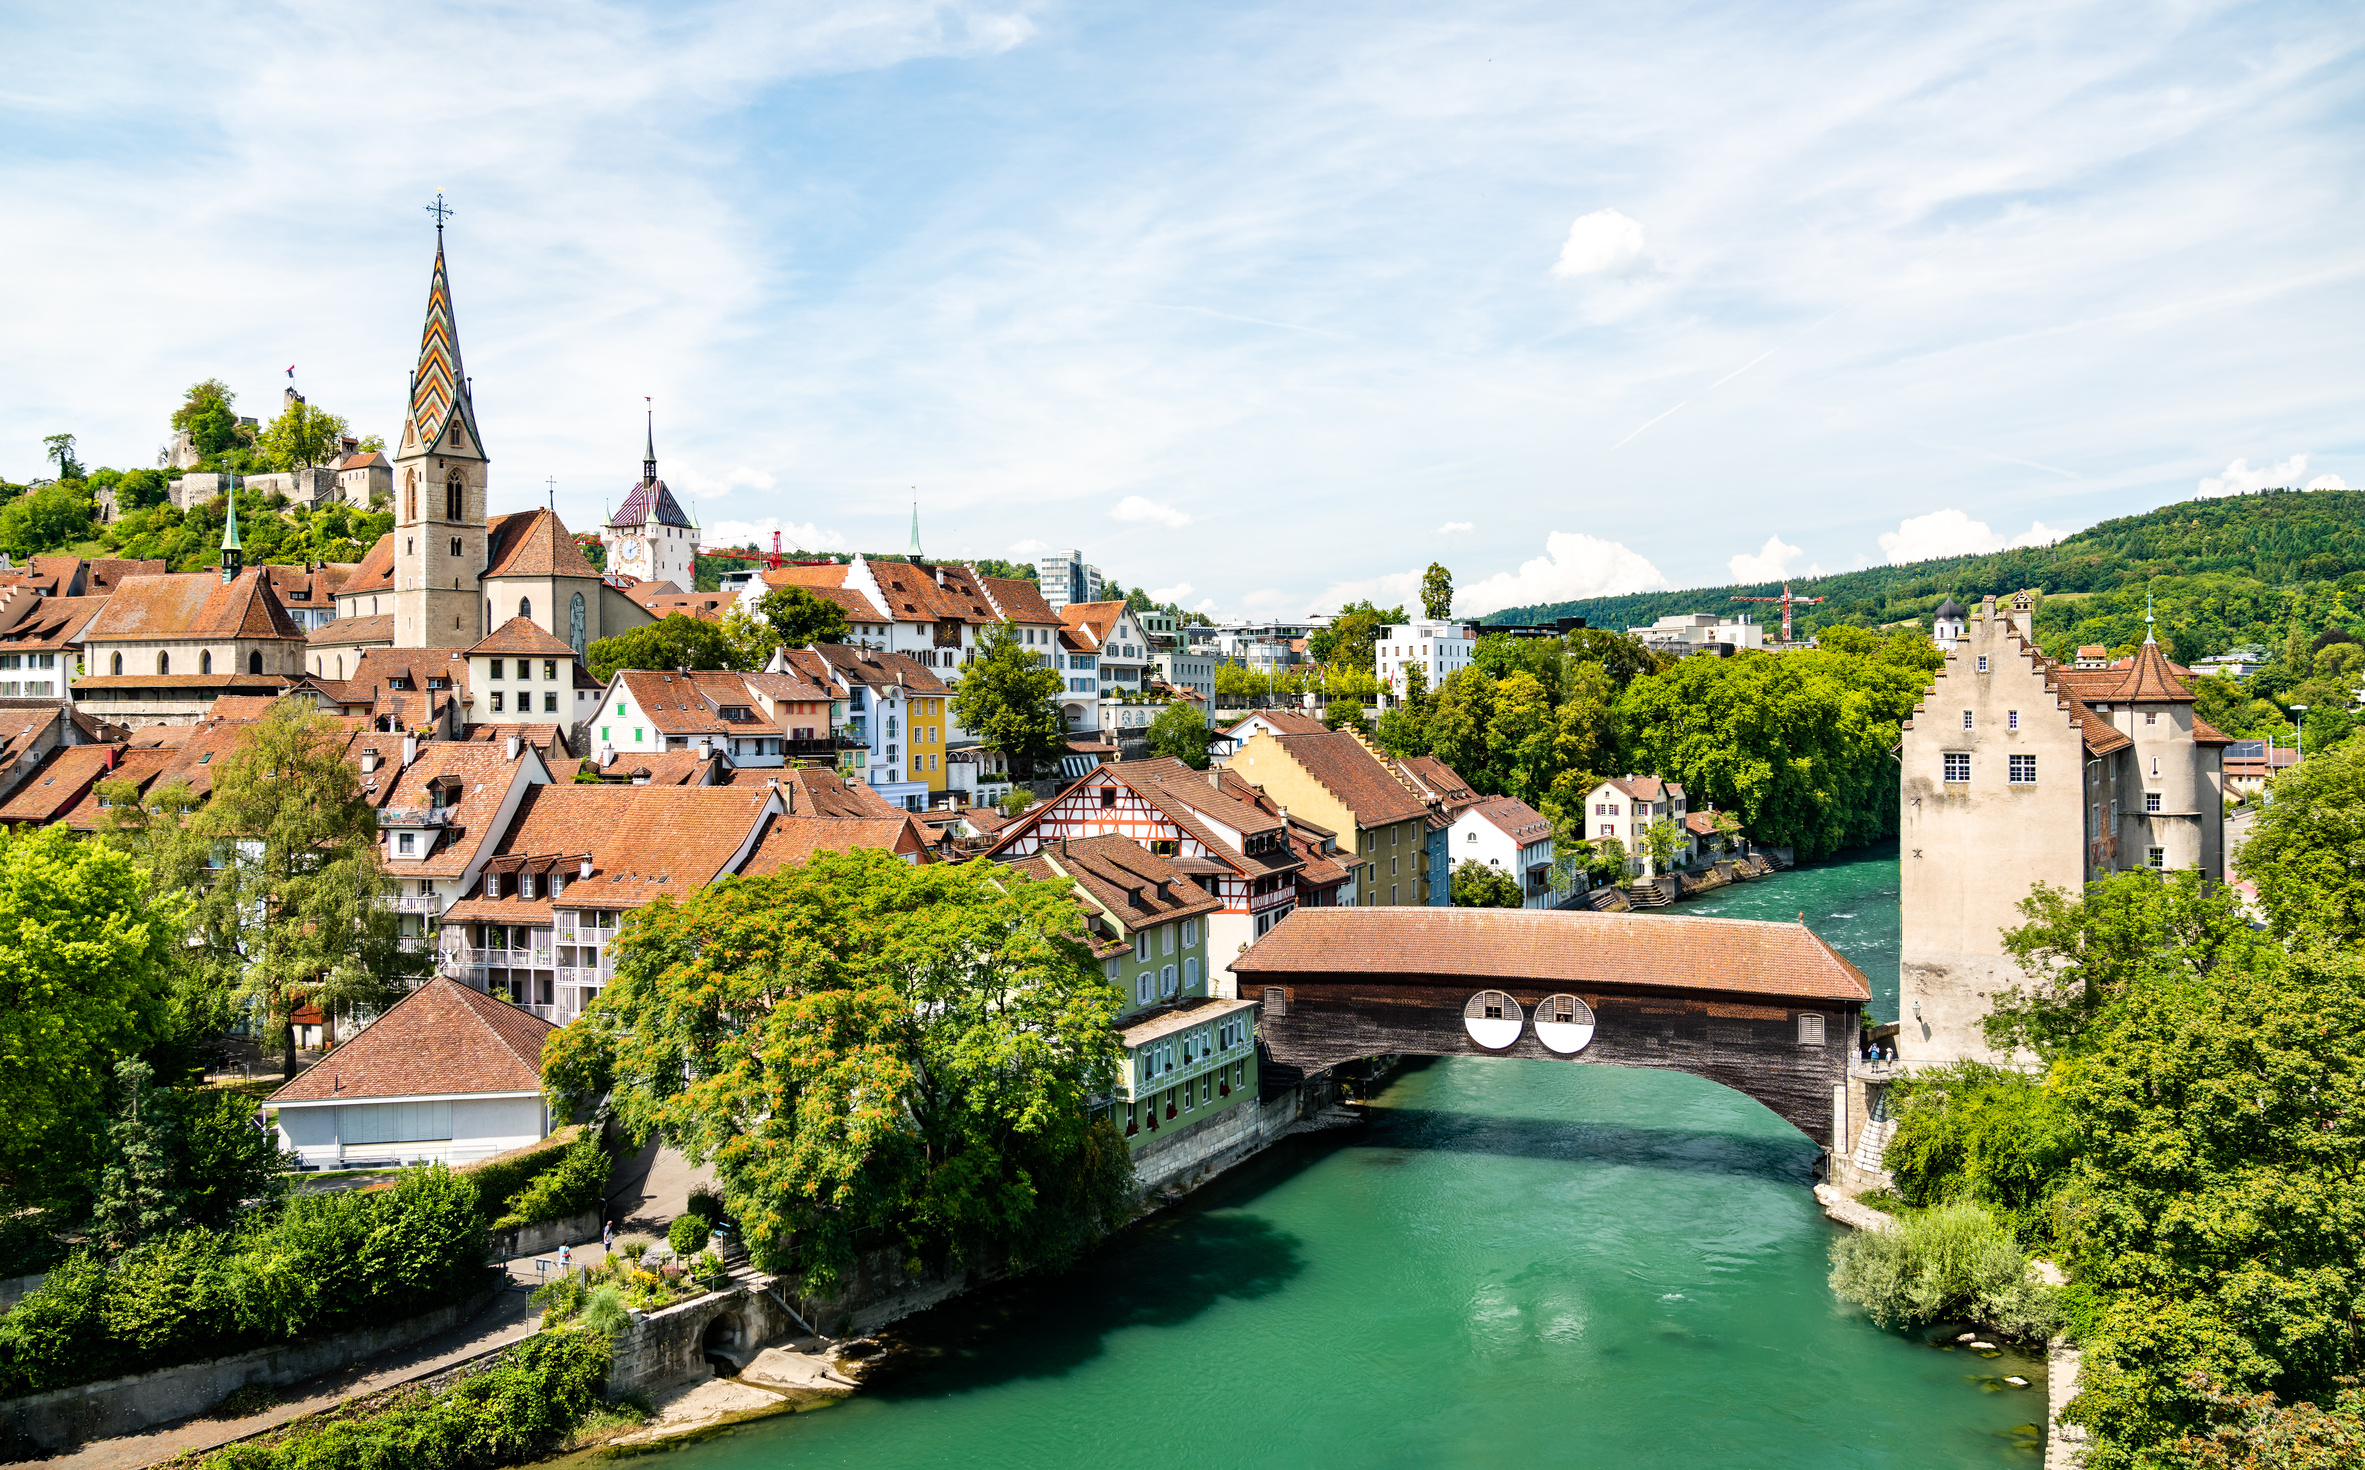 Baden Town in Aargau, Switzerland